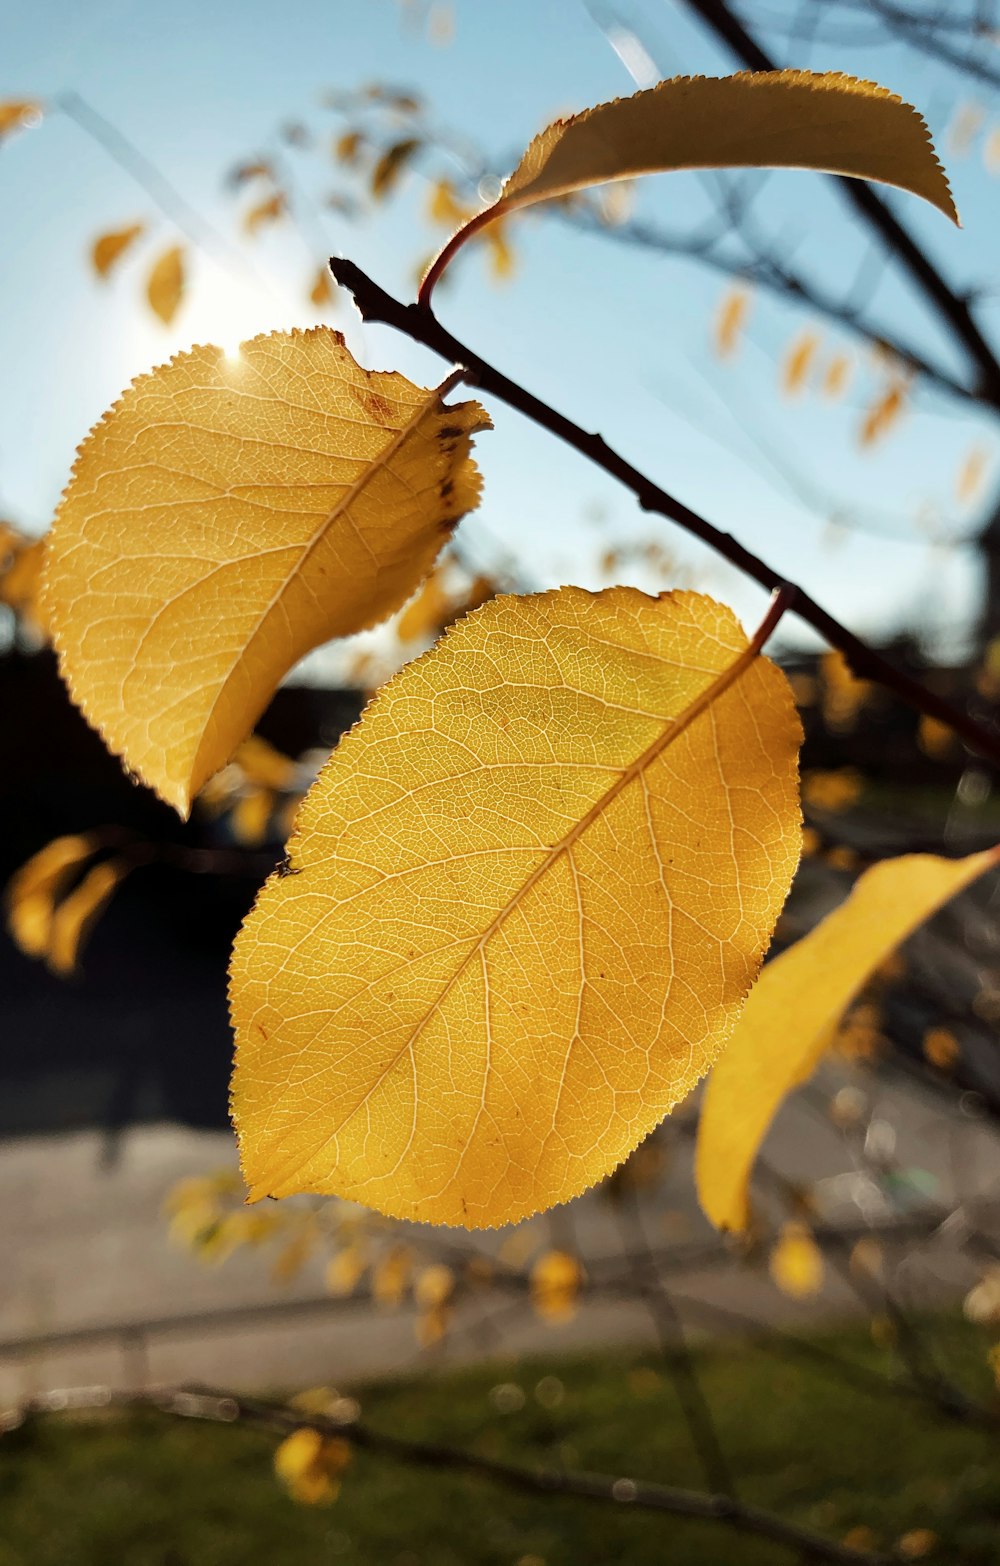 틸트 시프트 렌즈의 노란색 잎